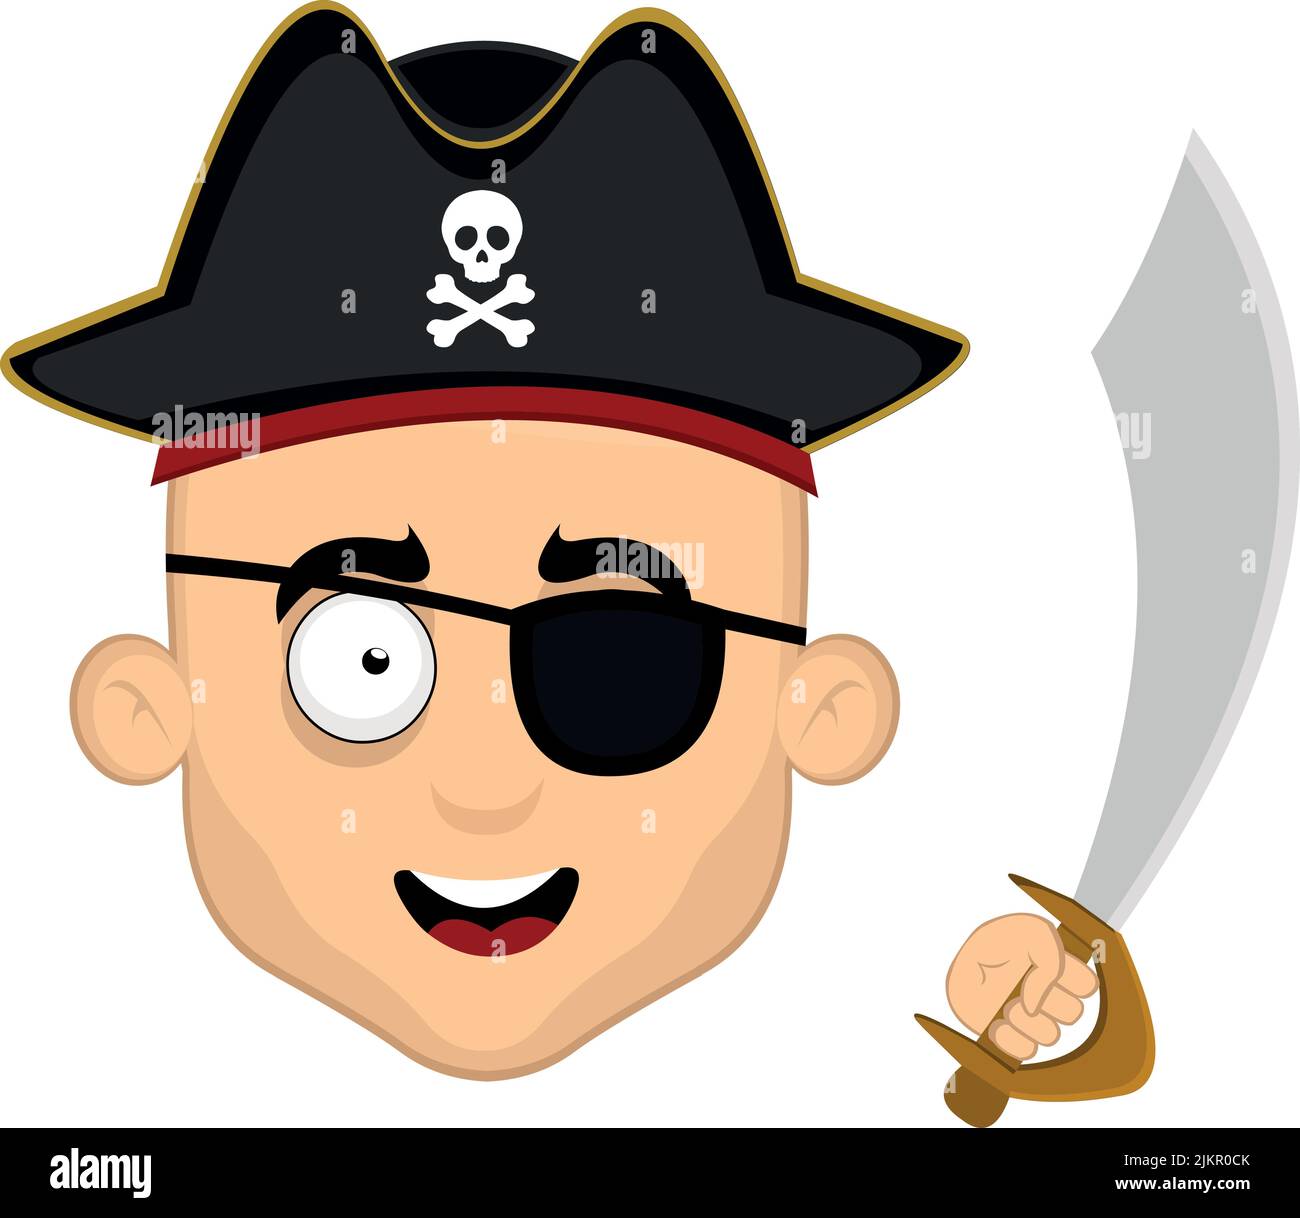 Illustration vectorielle du visage d'un pirate de dessin animé avec un chapeau, un timbre oculaire et une épée dans sa main Illustration de Vecteur